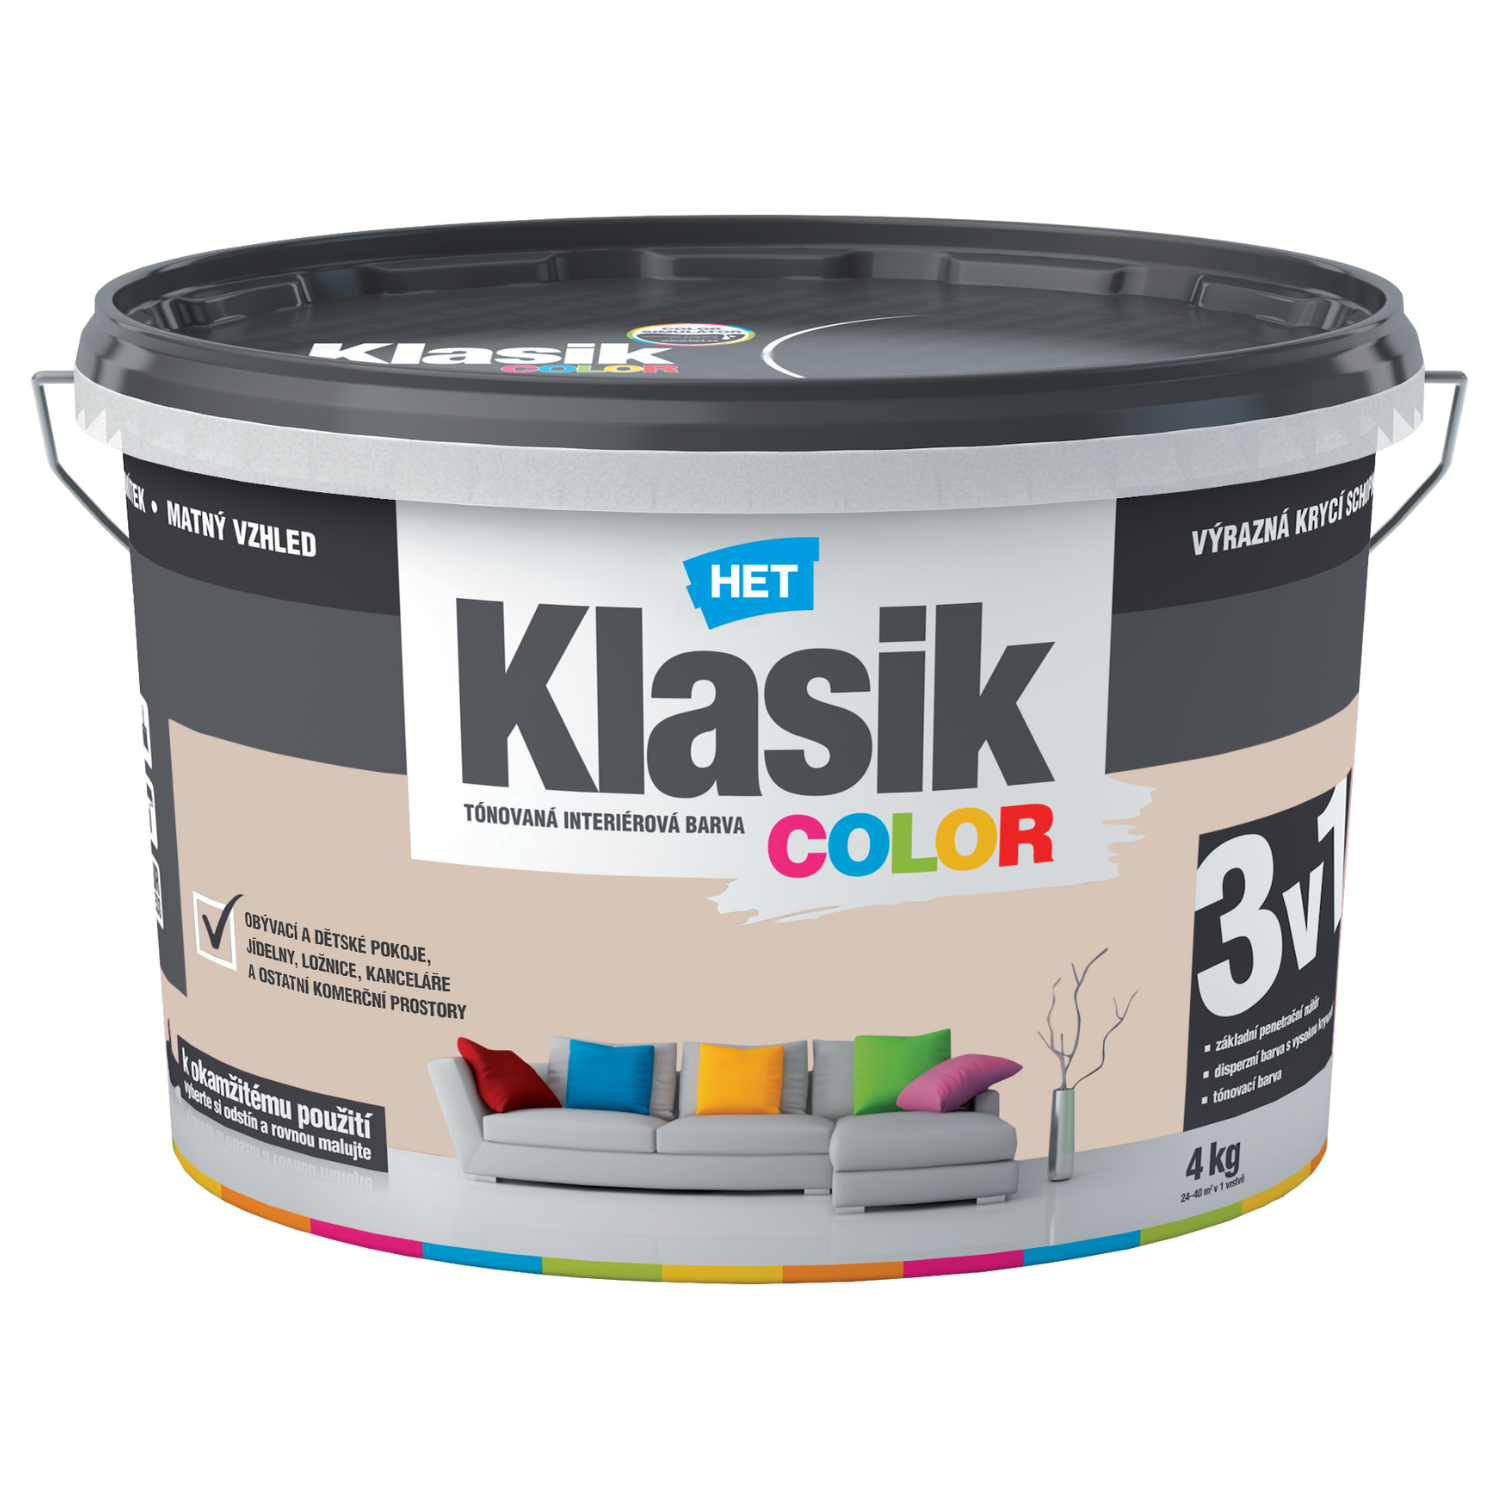 HET Klasik COLOR tónovaná interiérová akrylátová disperzná oteruvzdorná farba 4 kg, KC0238 - béžový muškátový